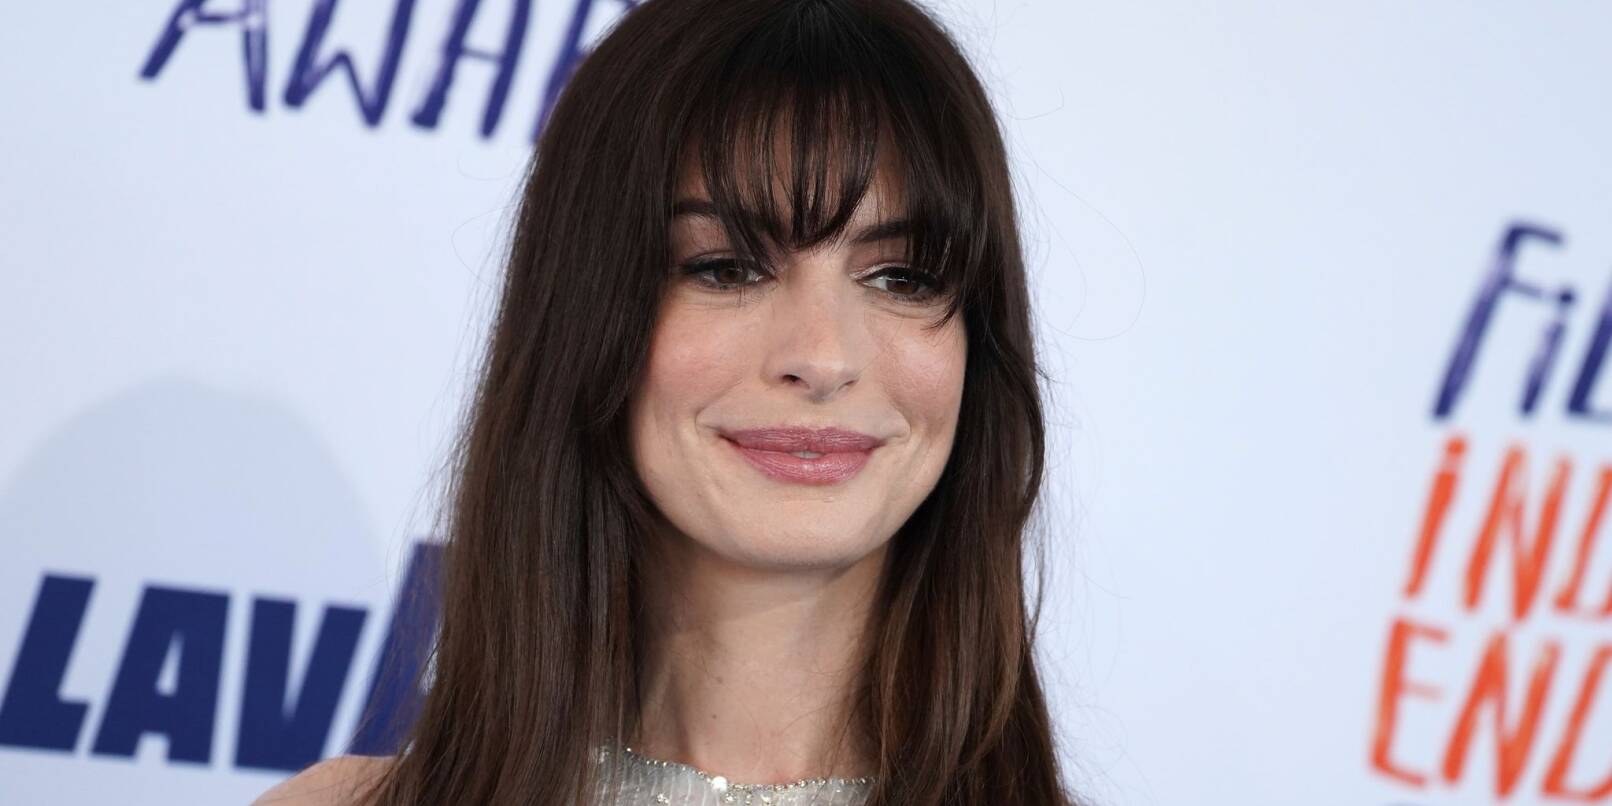 Anne Hathaway spielt in der romantischen Komädie «Als du mich sahst» mit.